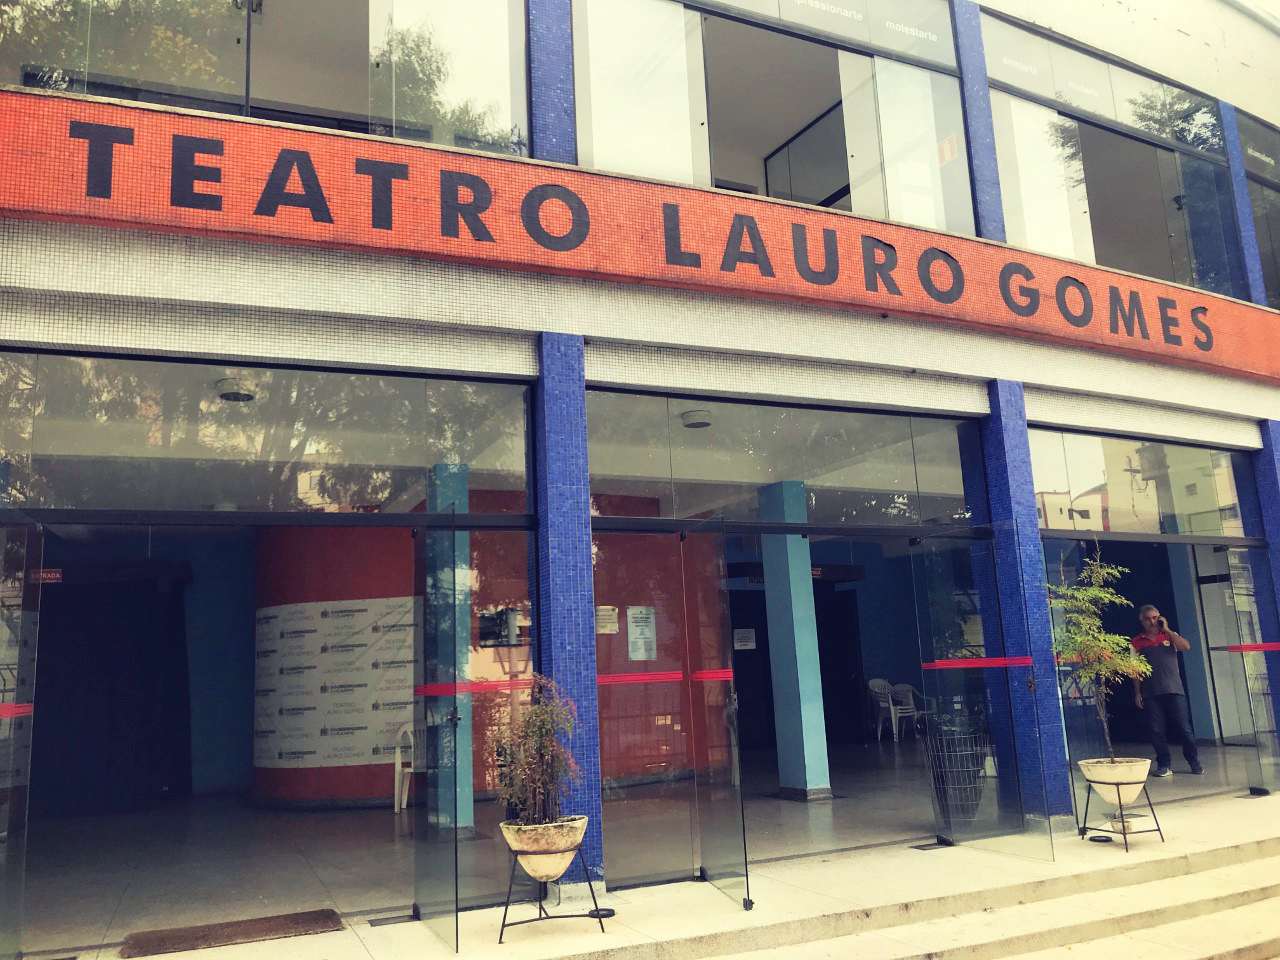 SHOW GUITO - SÃO BERNARDO DO CAMPO, Teatro Lauro Gomes, São